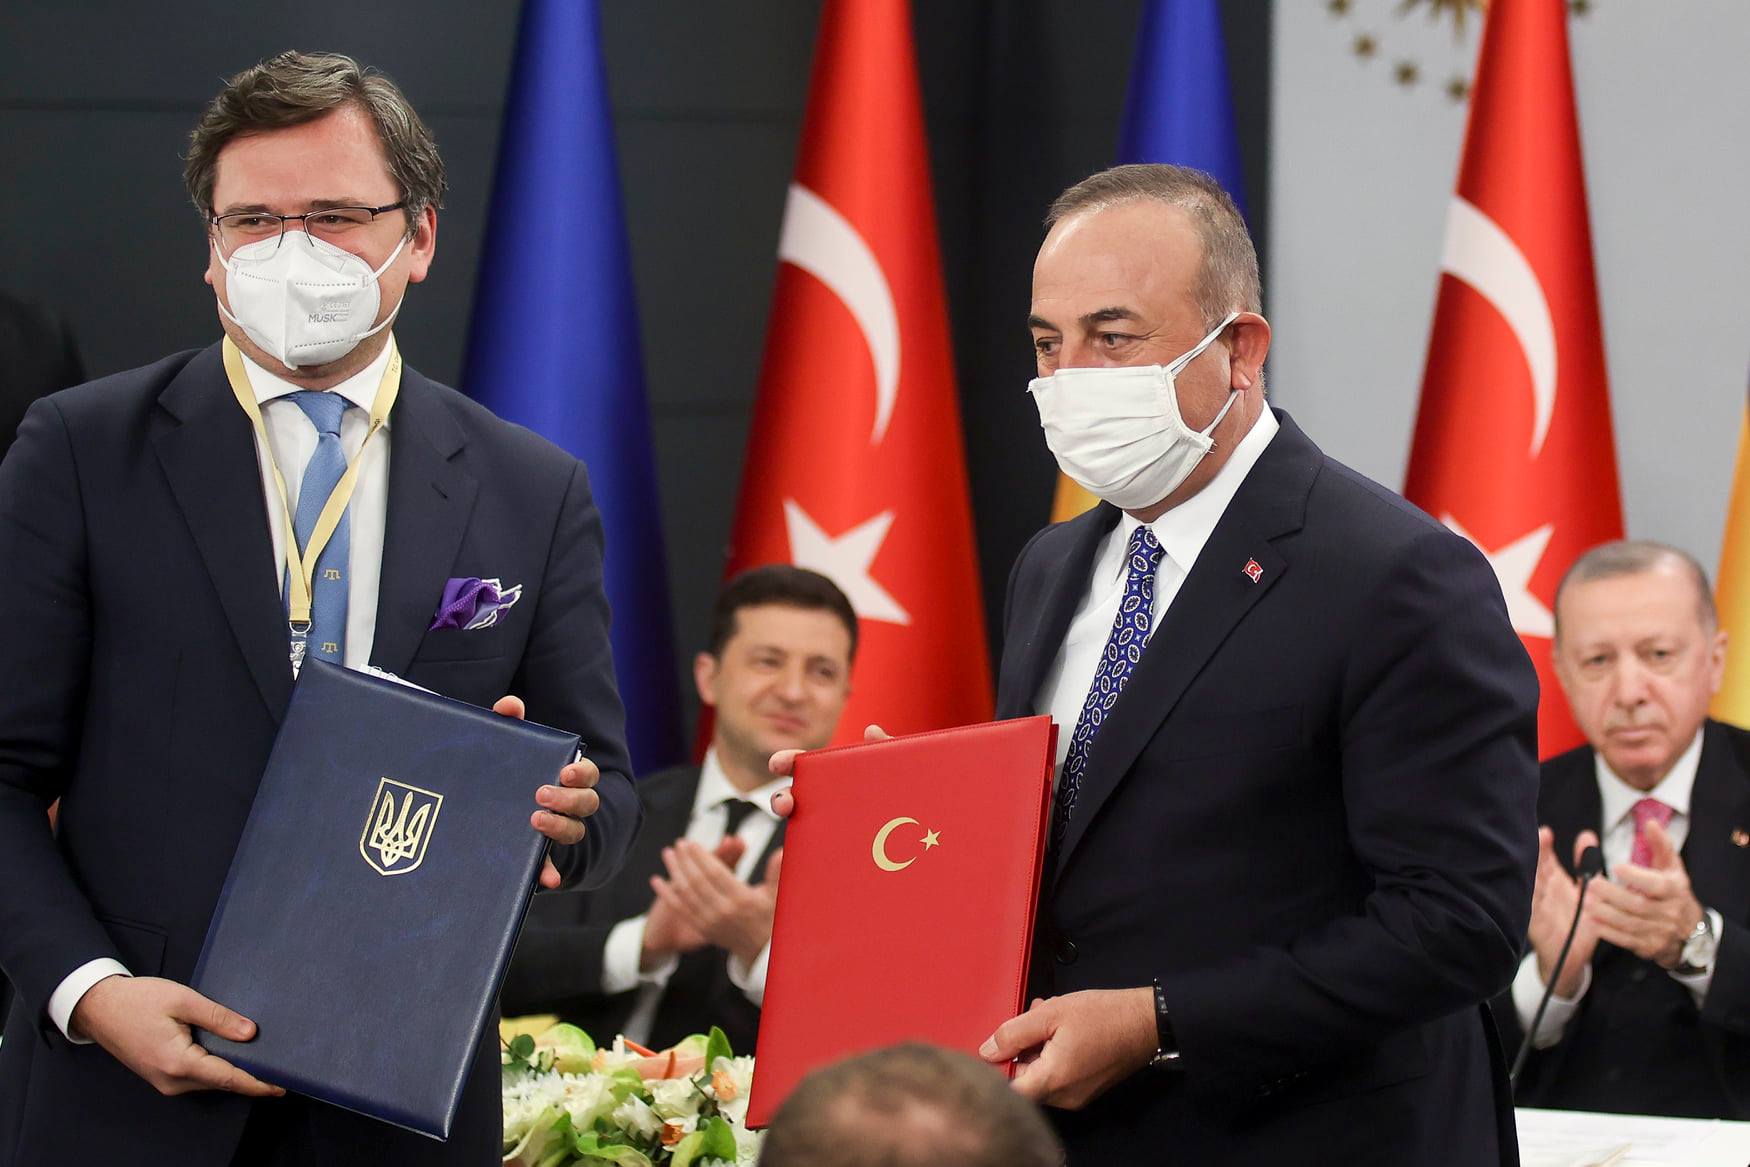 во время визита Зеленского в Турцию были подписаны двусторонние документы. Скриншот из фейсбука Офиса президента